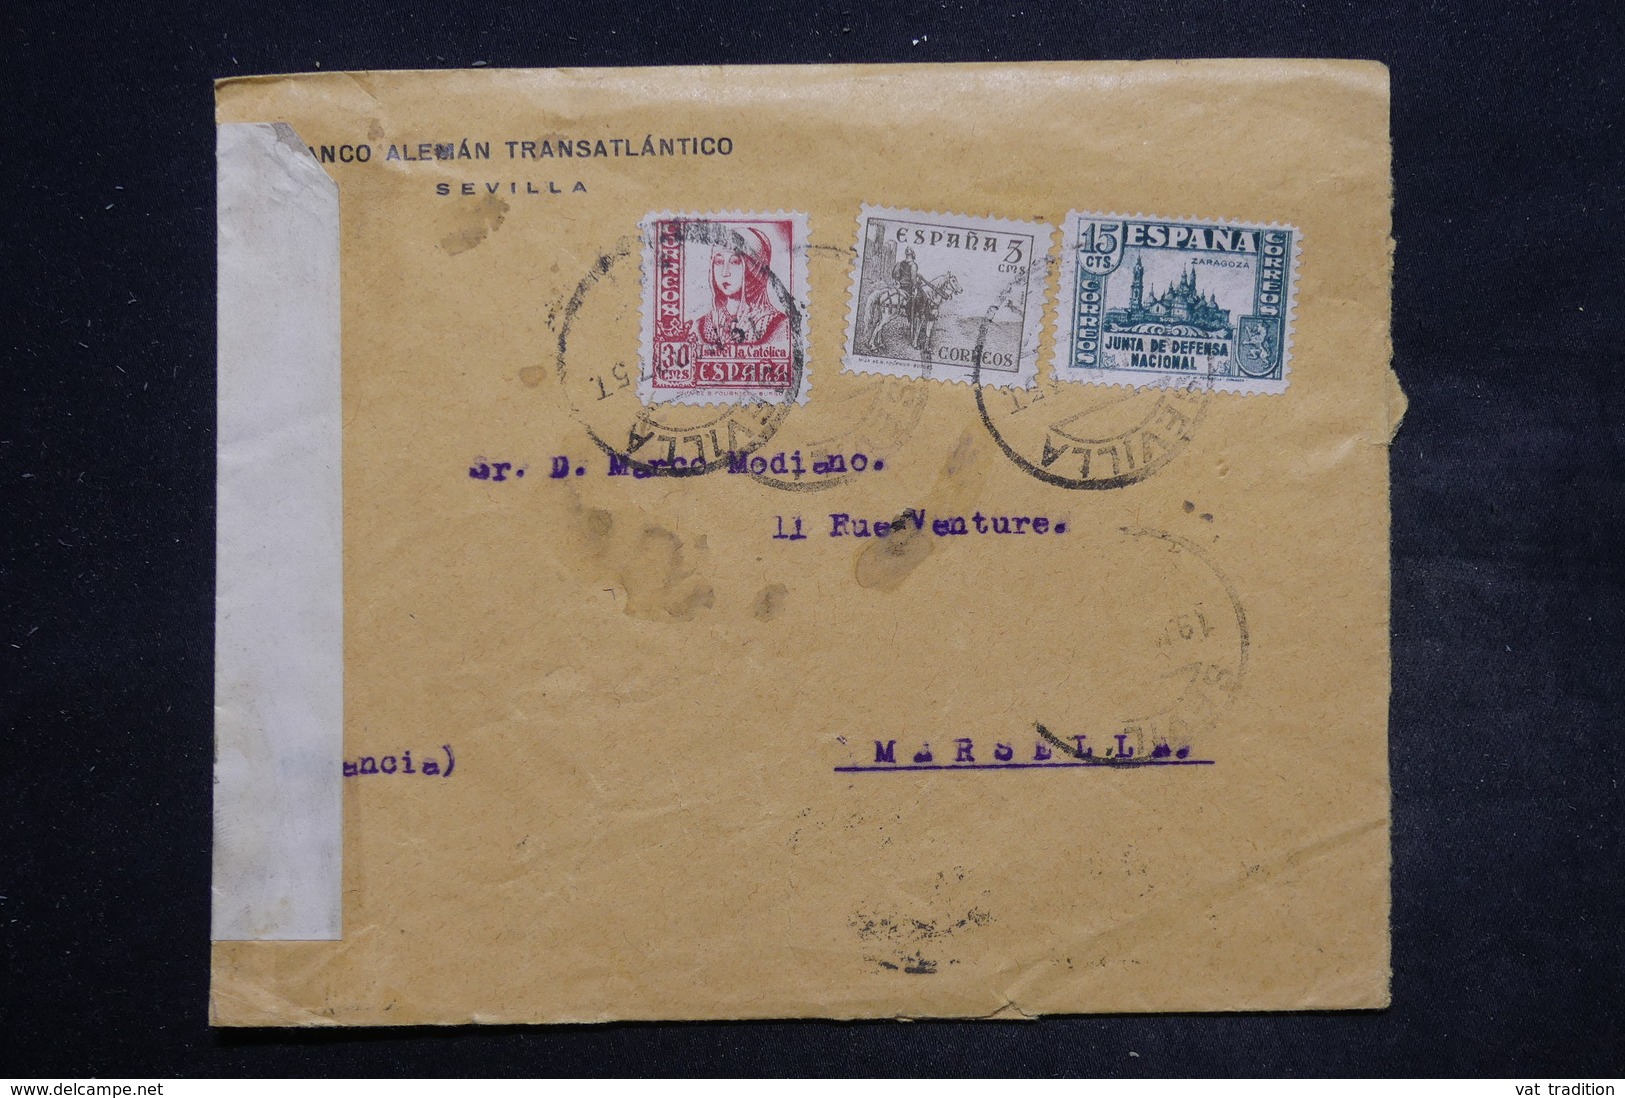 ESPAGNE - Enveloppe Commerciale De Sevilla Pour Marseille En 1937 Avec Contrôle Postal - L 26858 - Marques De Censures Républicaines